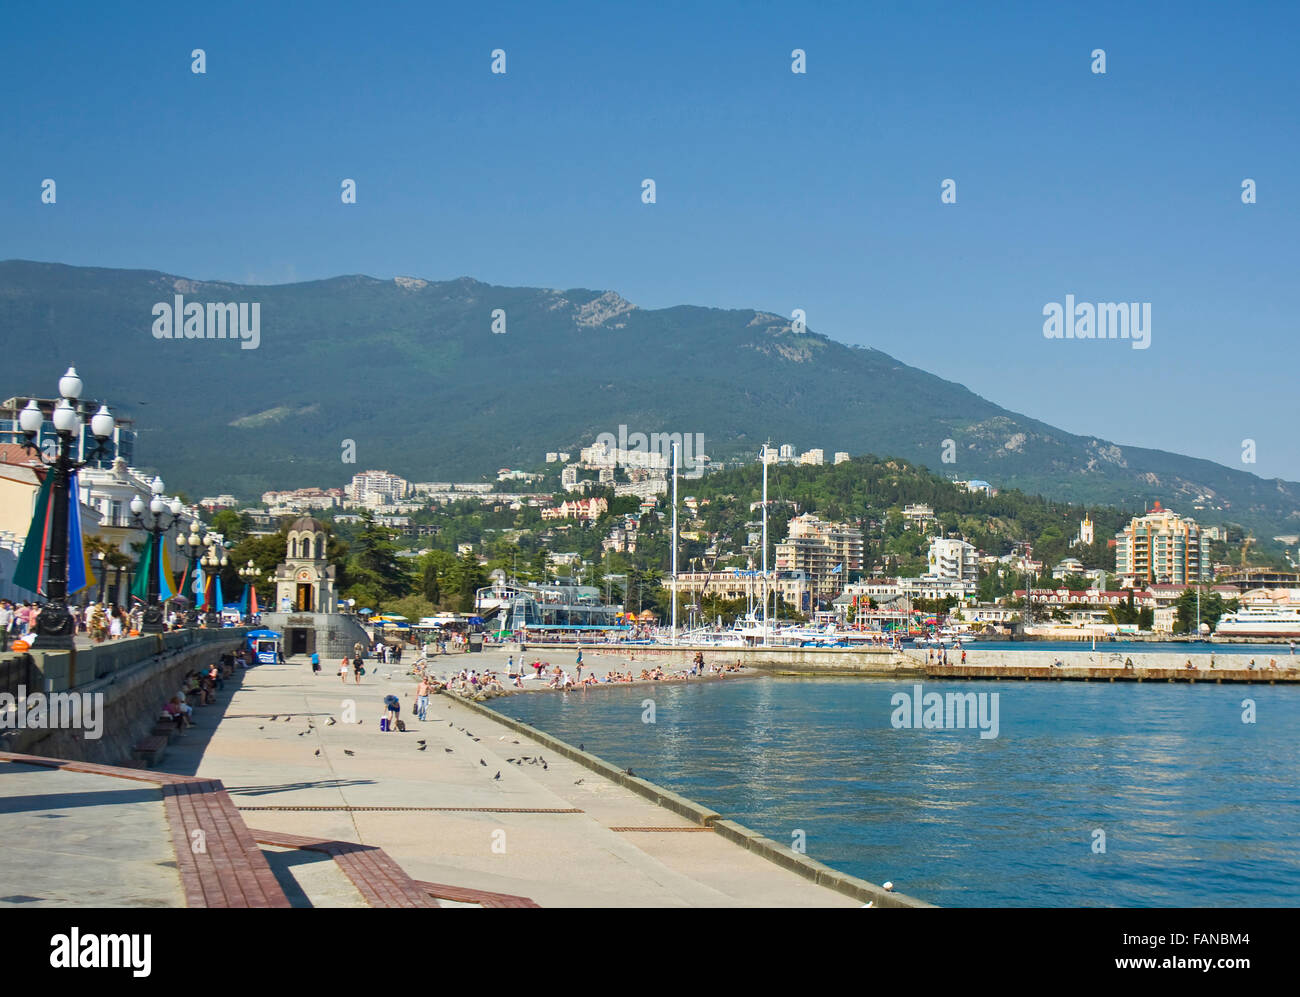 Jalta, Krim - 11. Mai 2012: Bahndamm der Stadt Jalta, beste Resort der  Region Krim am Schwarzen Meer, genannt "Perl der Krim Stockfotografie -  Alamy